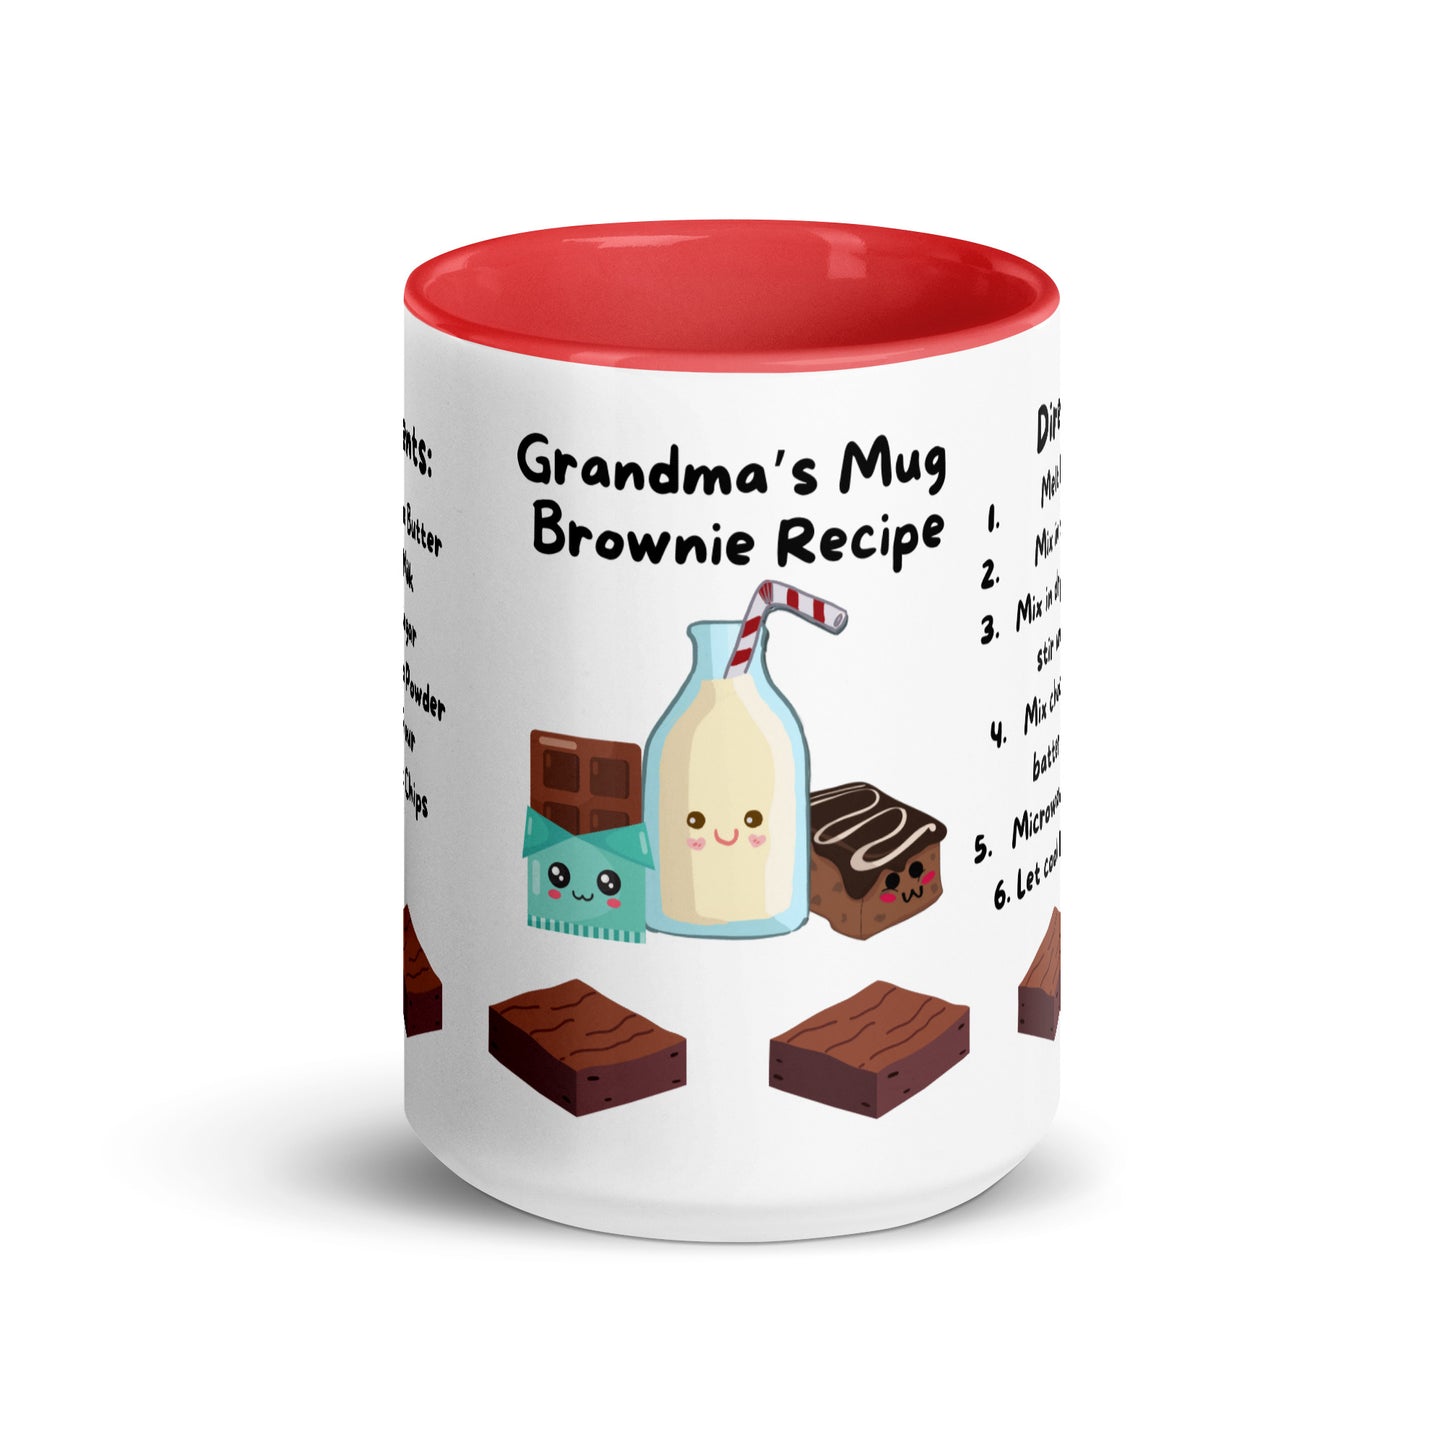 Grandma's Brownie *Mug Cake Recipe Mug*